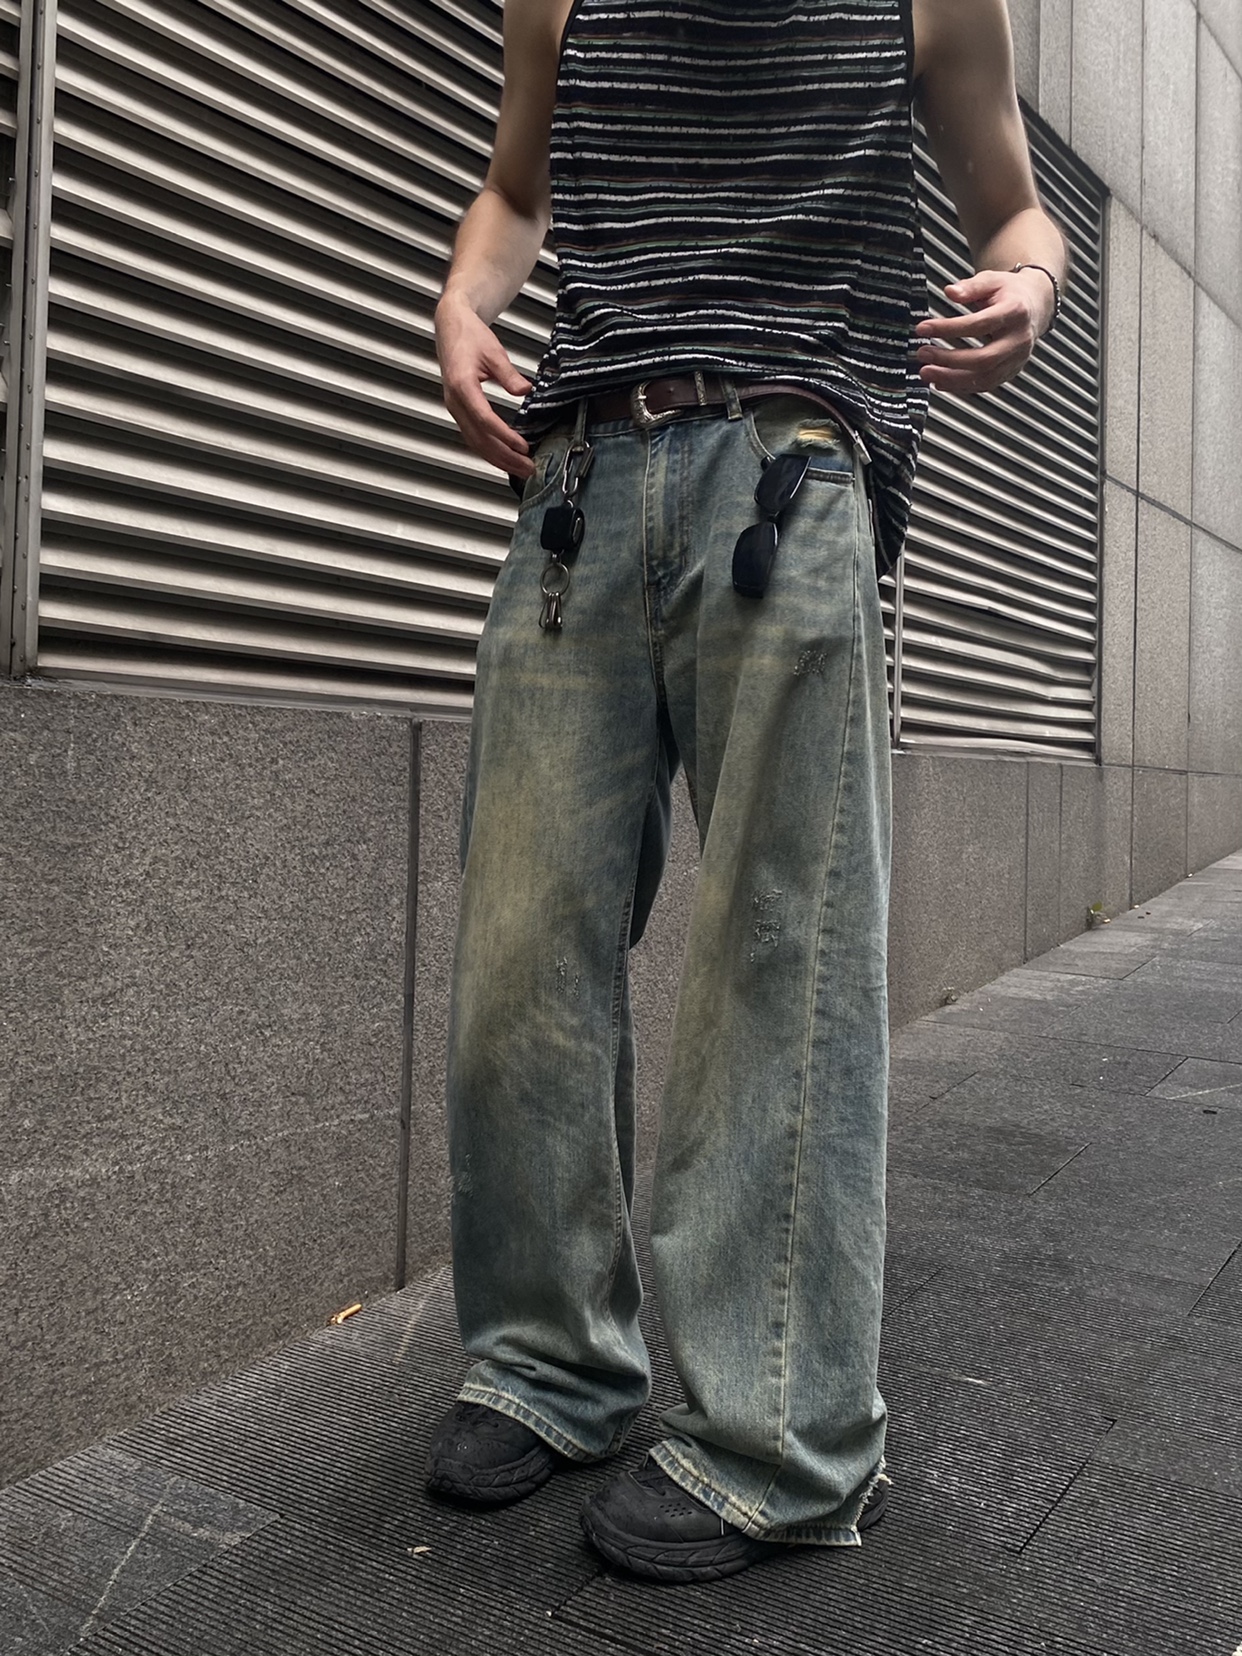 TWORED 美式复古水洗做旧牛仔裤男裤脚破坏休闲宽松百搭直筒长裤